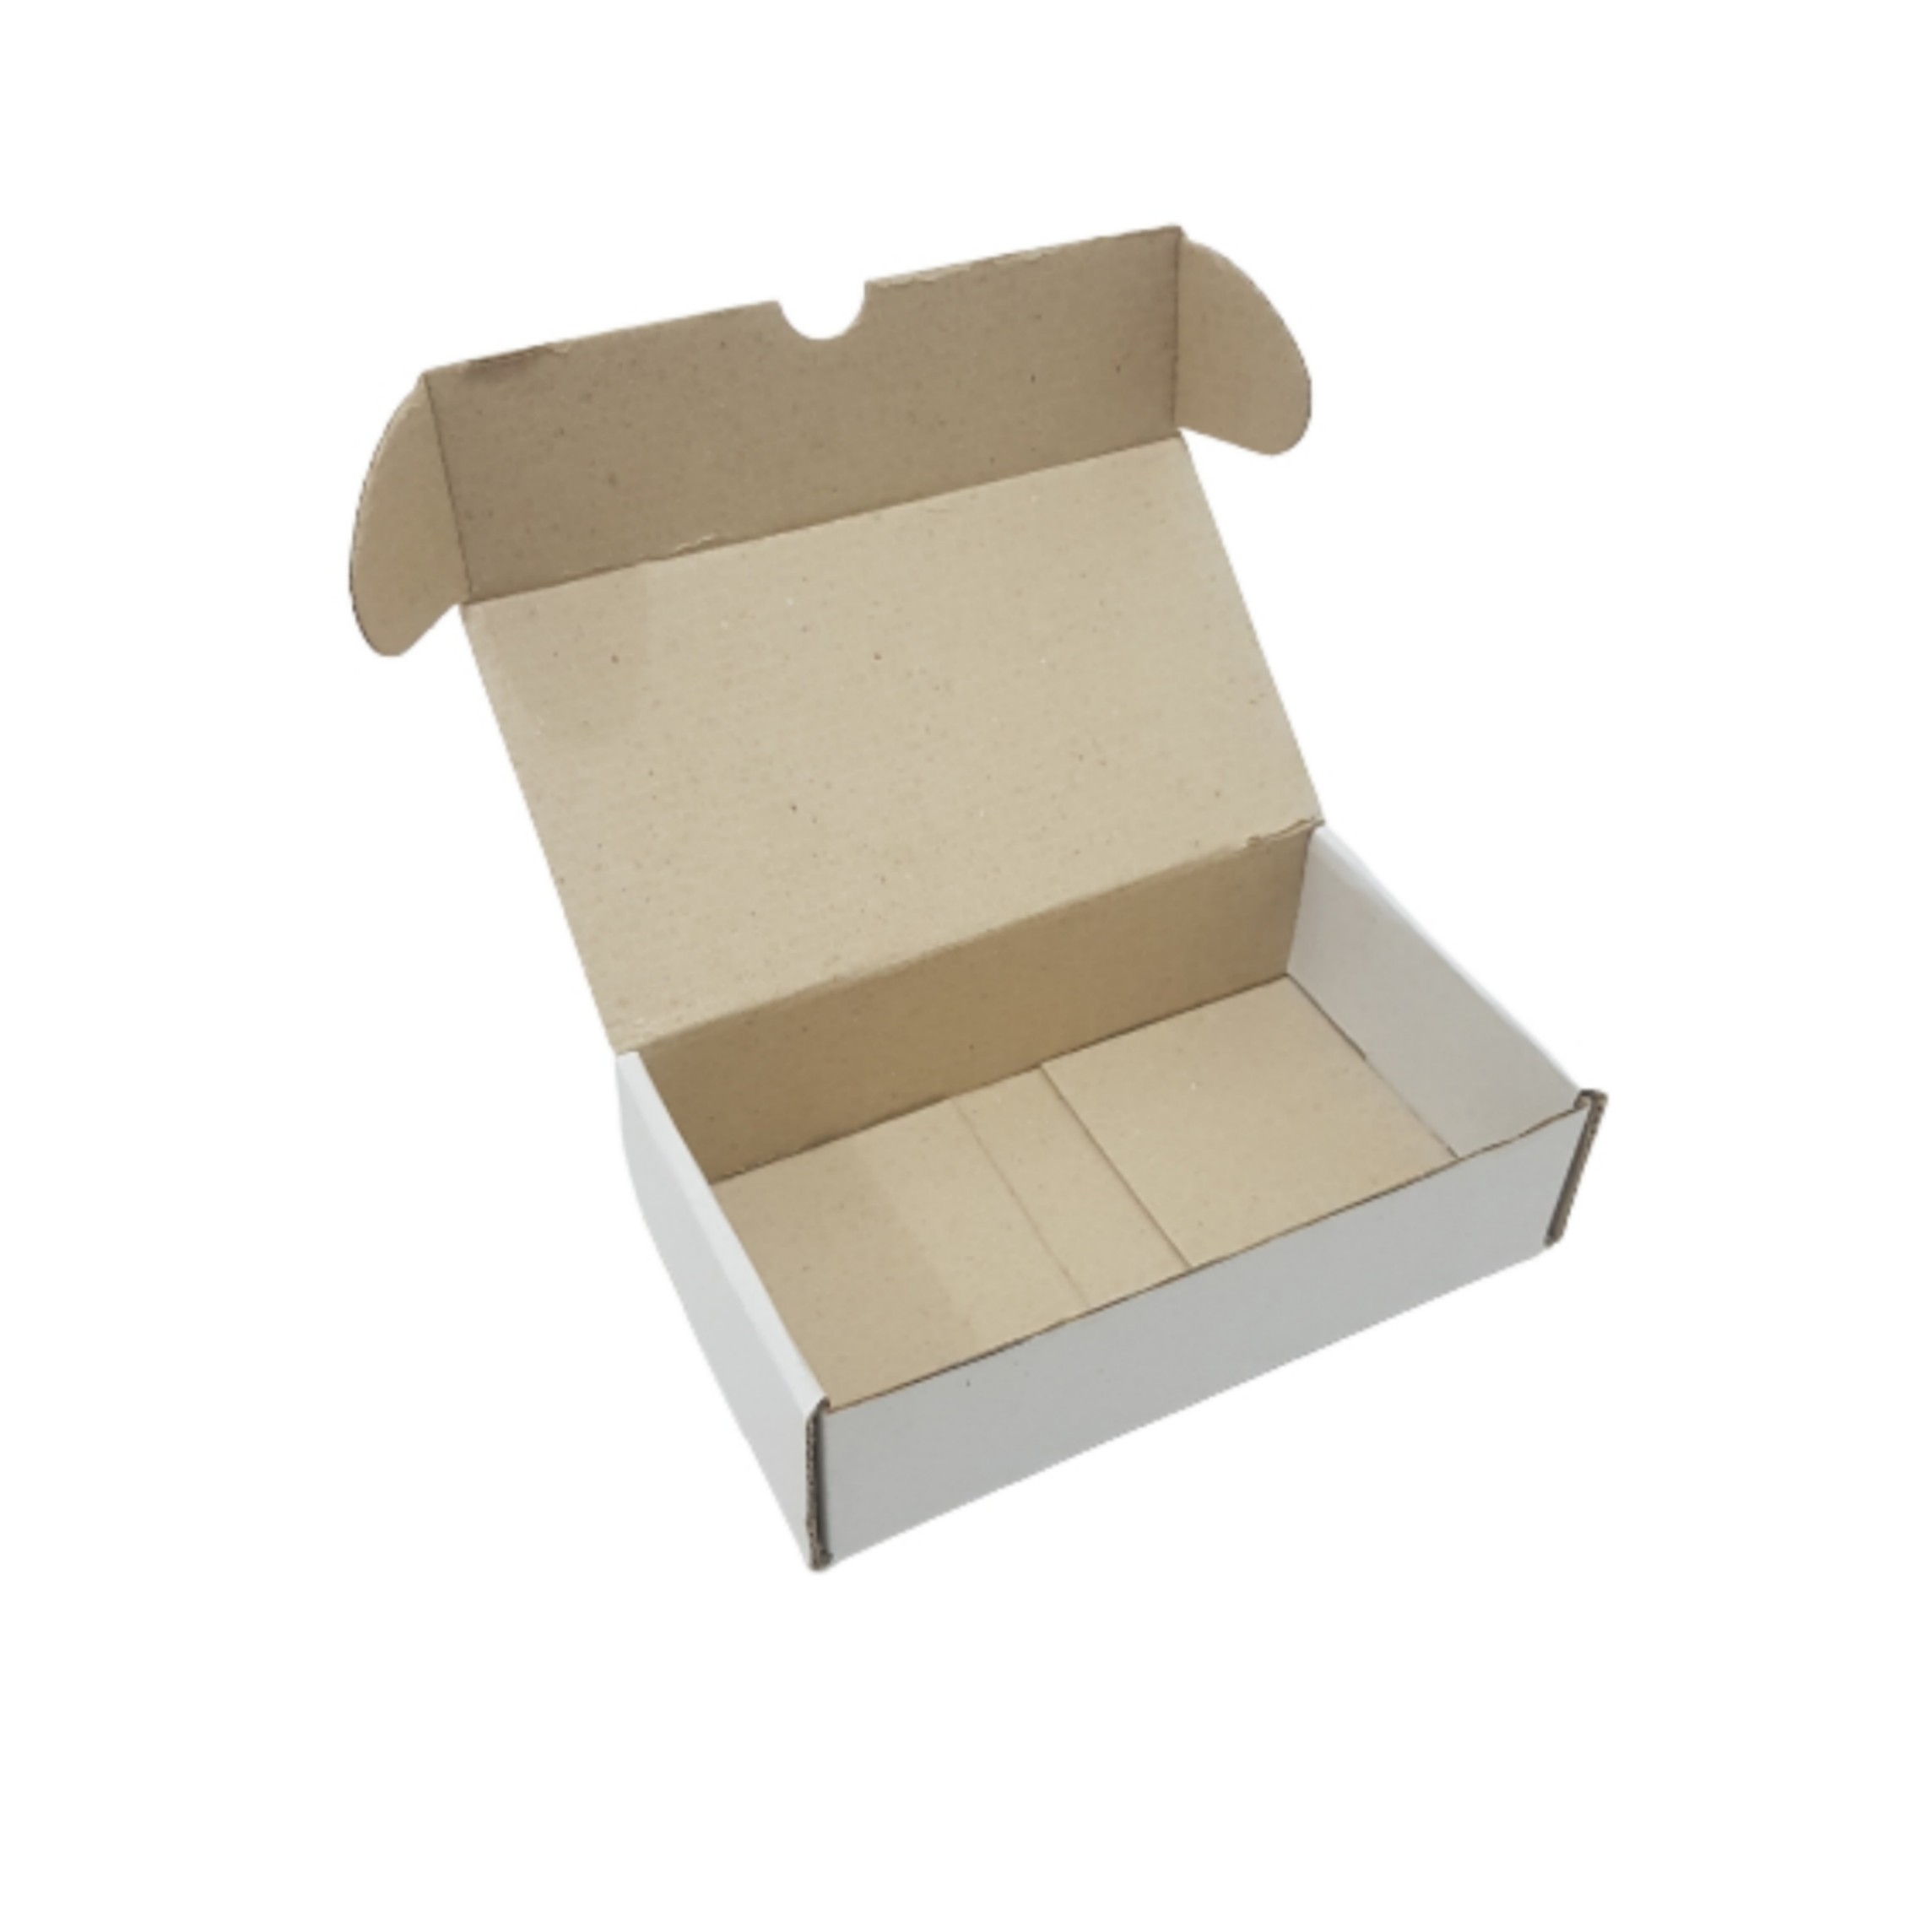 جعبه بسته بندی کد S181005 بسته ۲۵ عددی